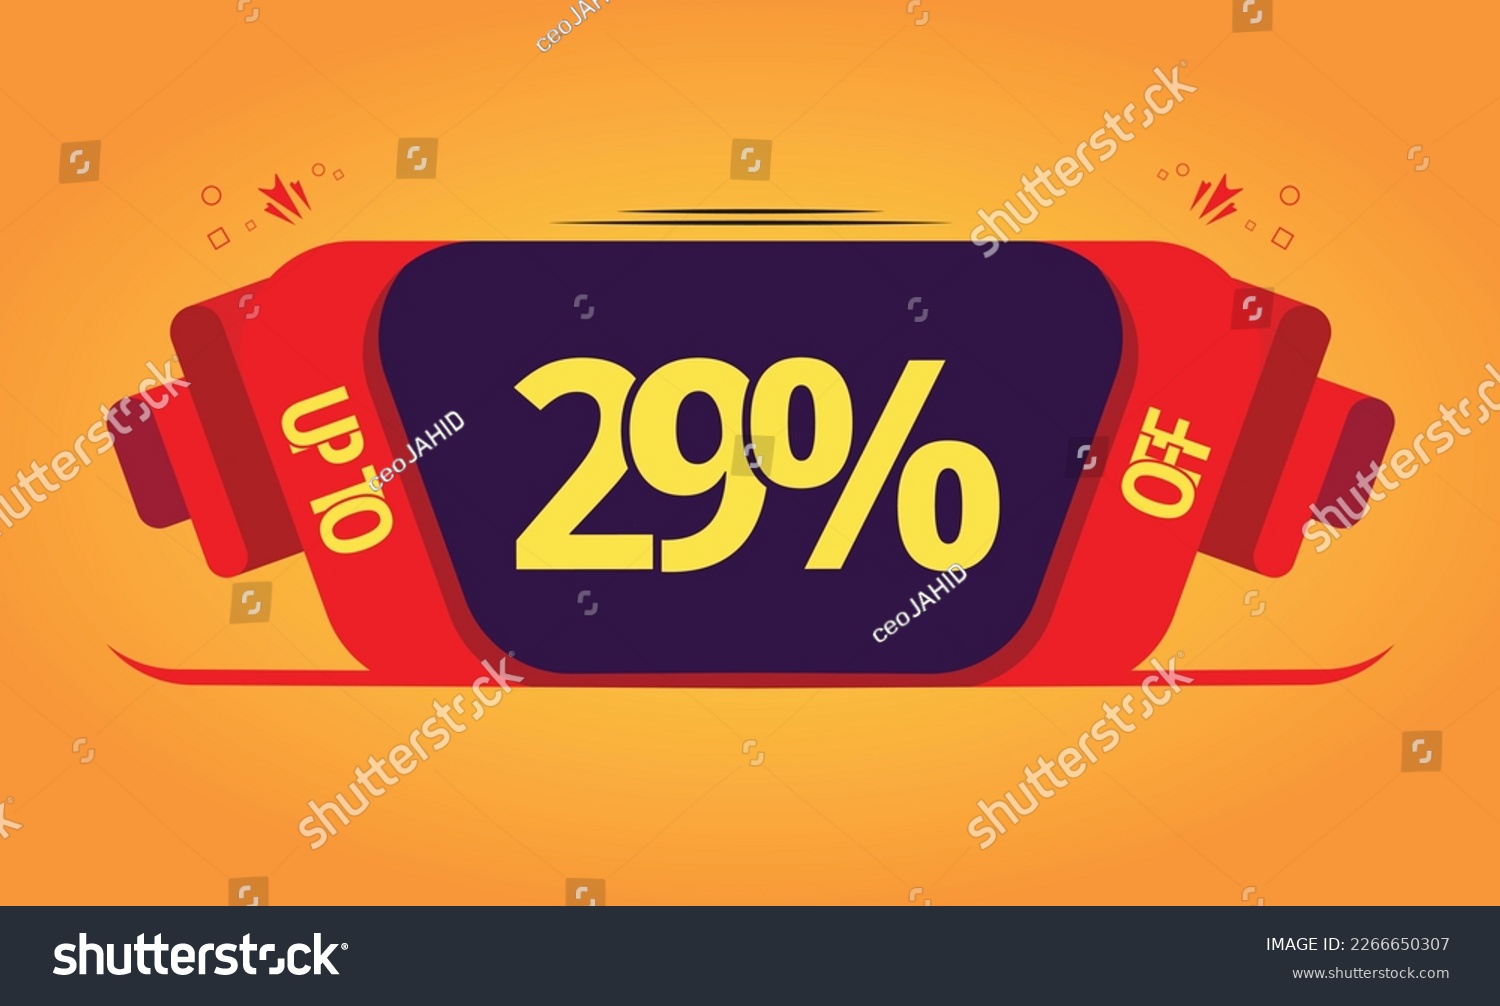 SVG of super sale UP TO 29% OFF. svg